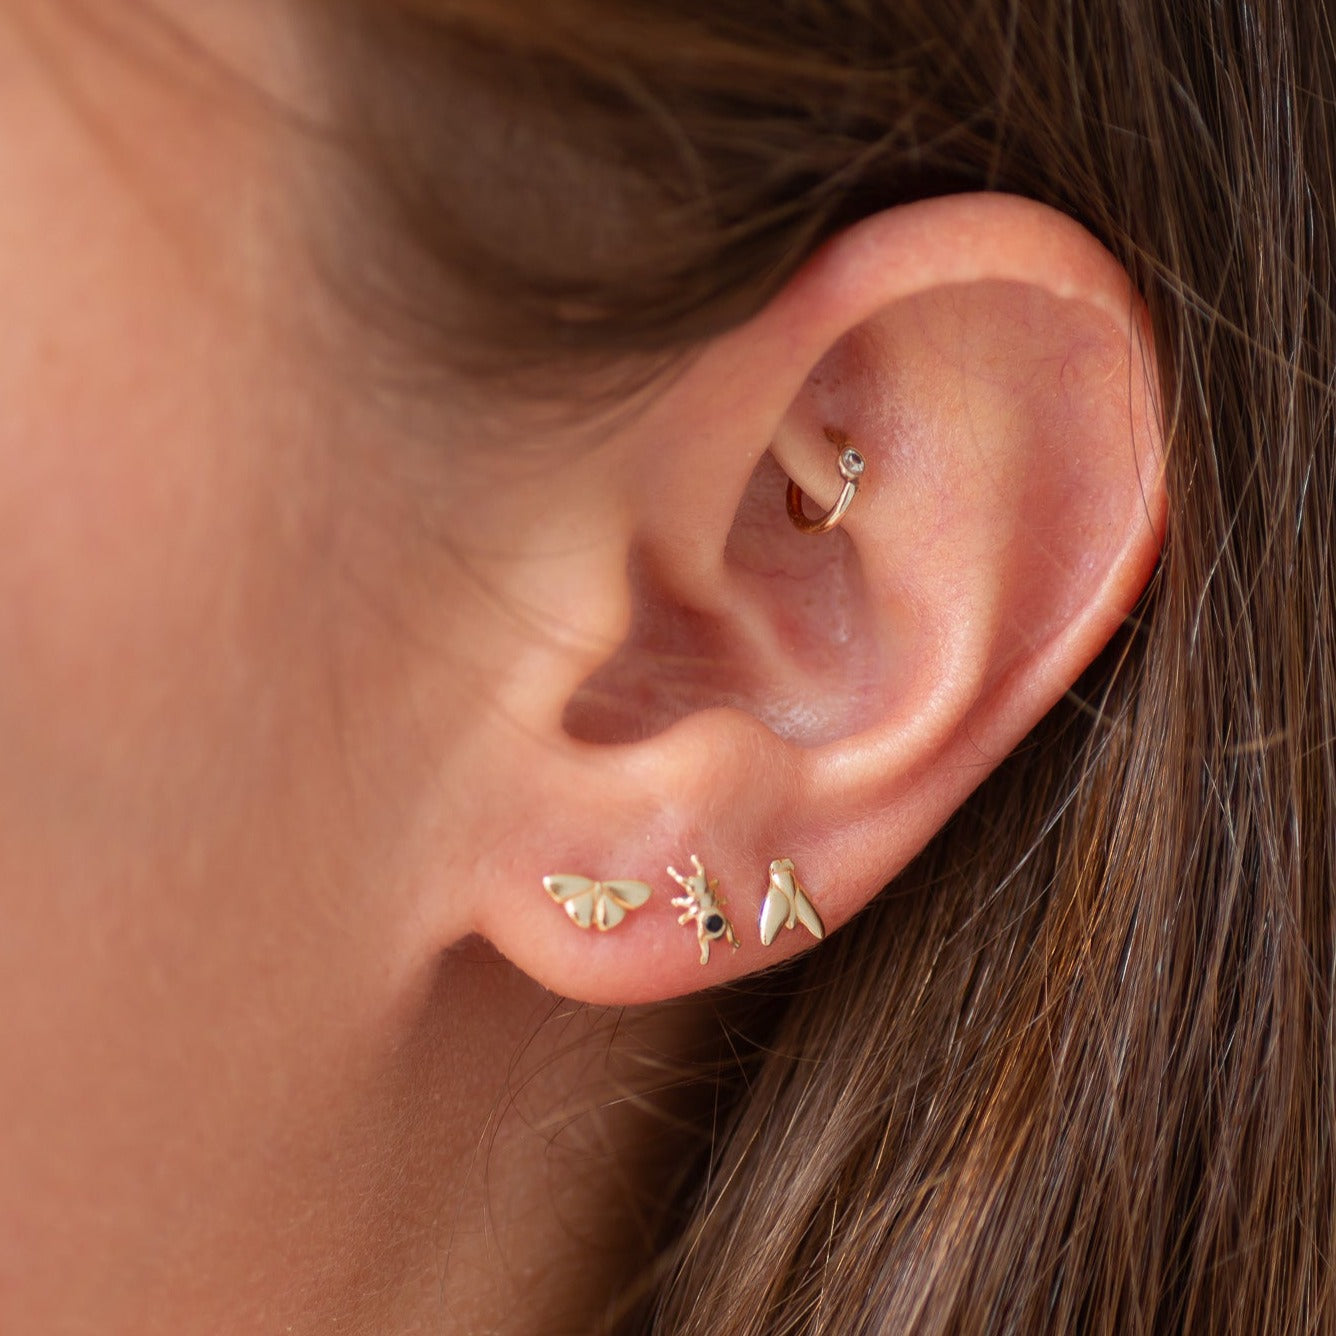 Ant earring stud 14k gold